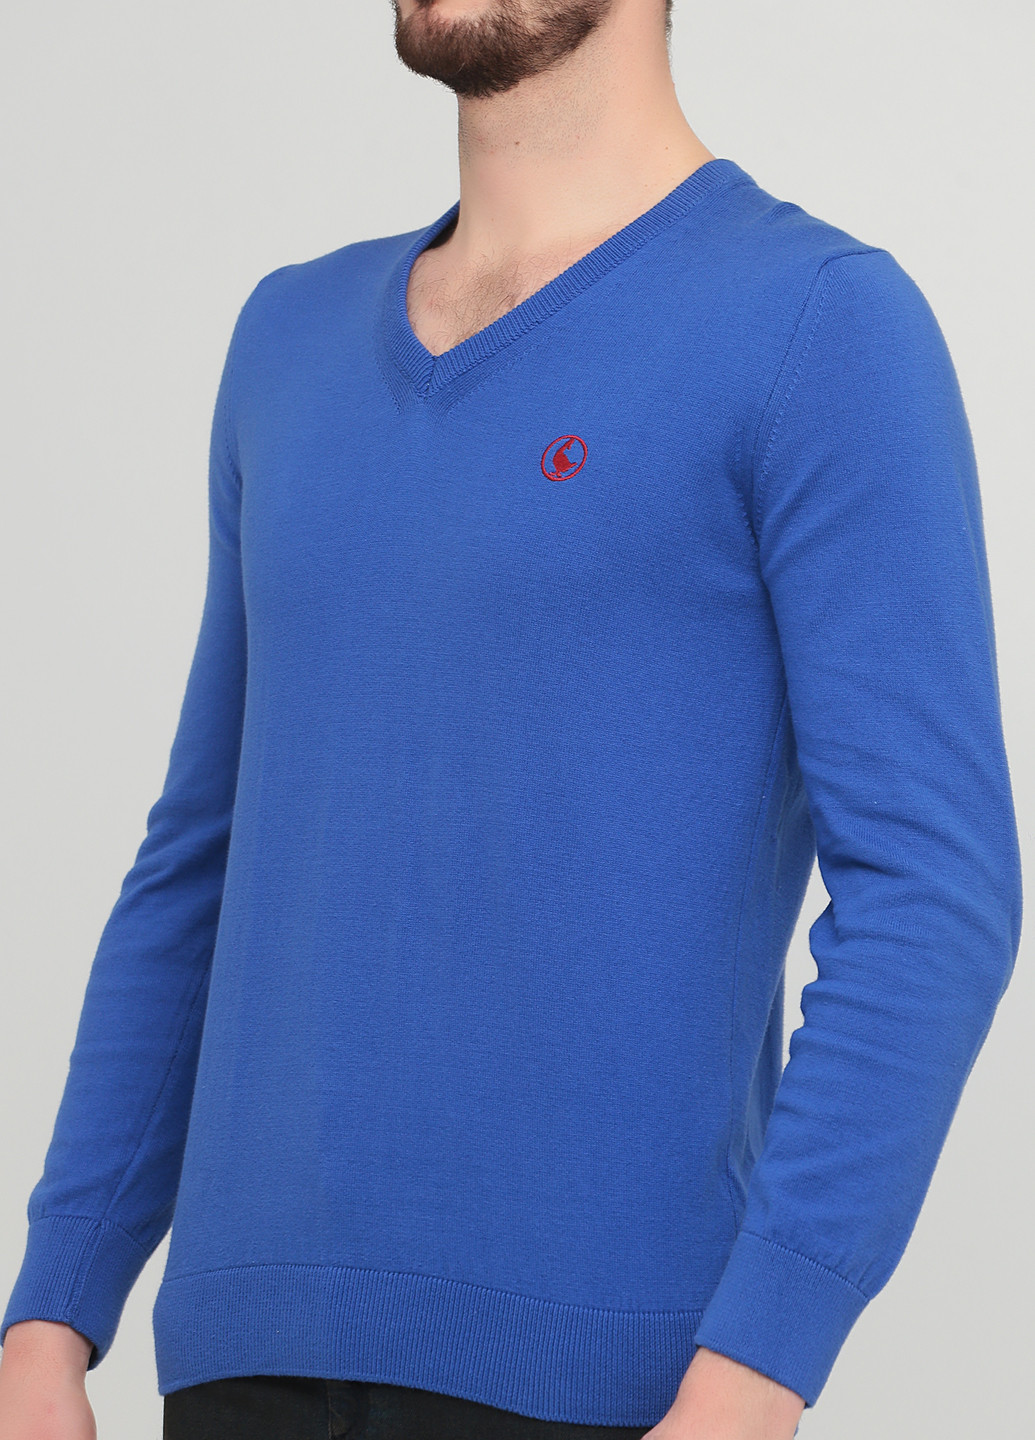 Светло-синий демисезонный пуловер пуловер El Ganso